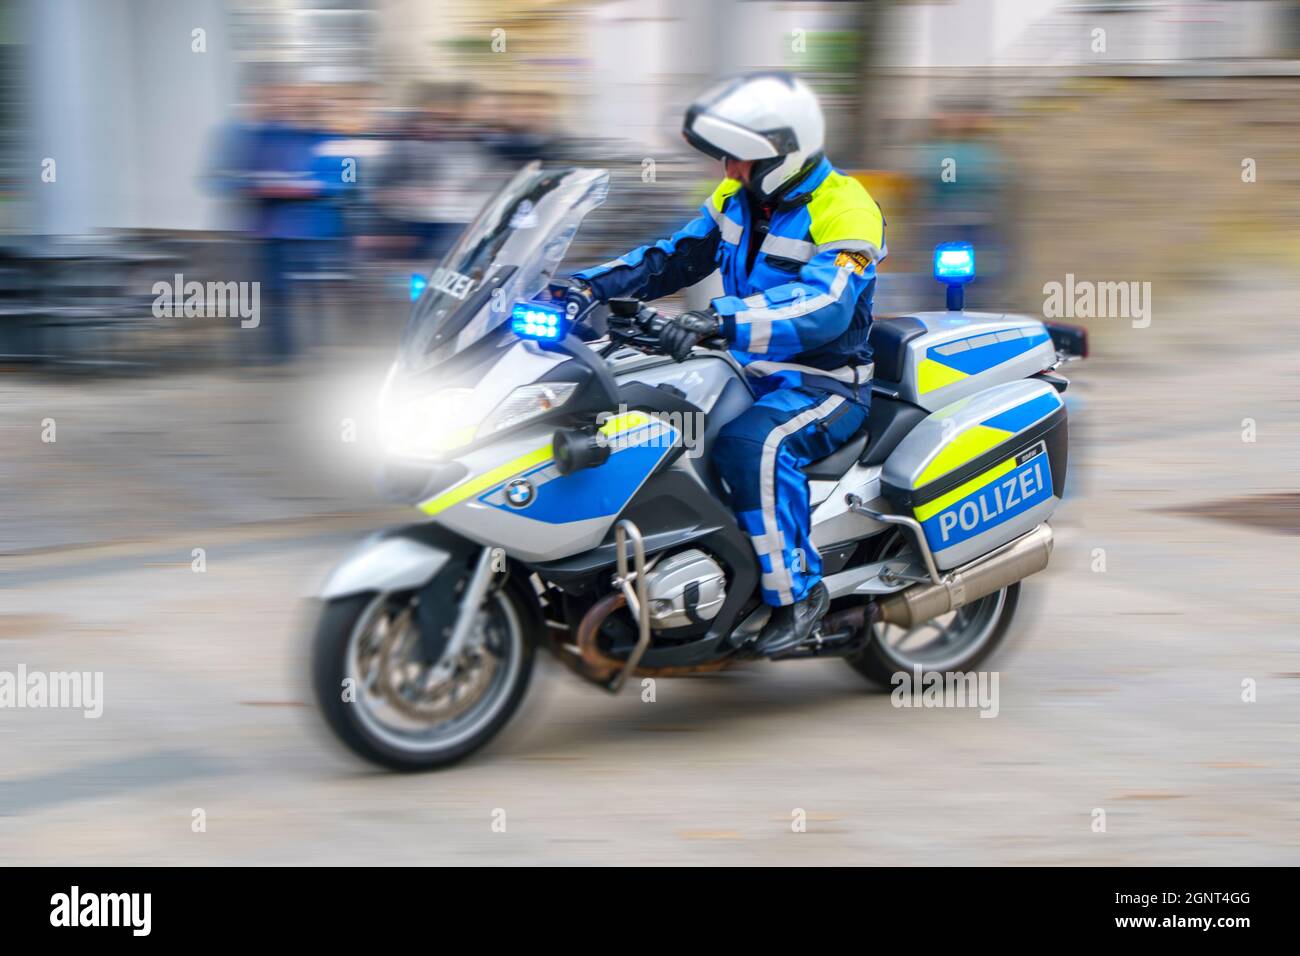 Ein Polizeimotorrad fährt mit Hoher Geschwindigkeit und Blaulicht durch die Stadt Augsburg Banque D'Images